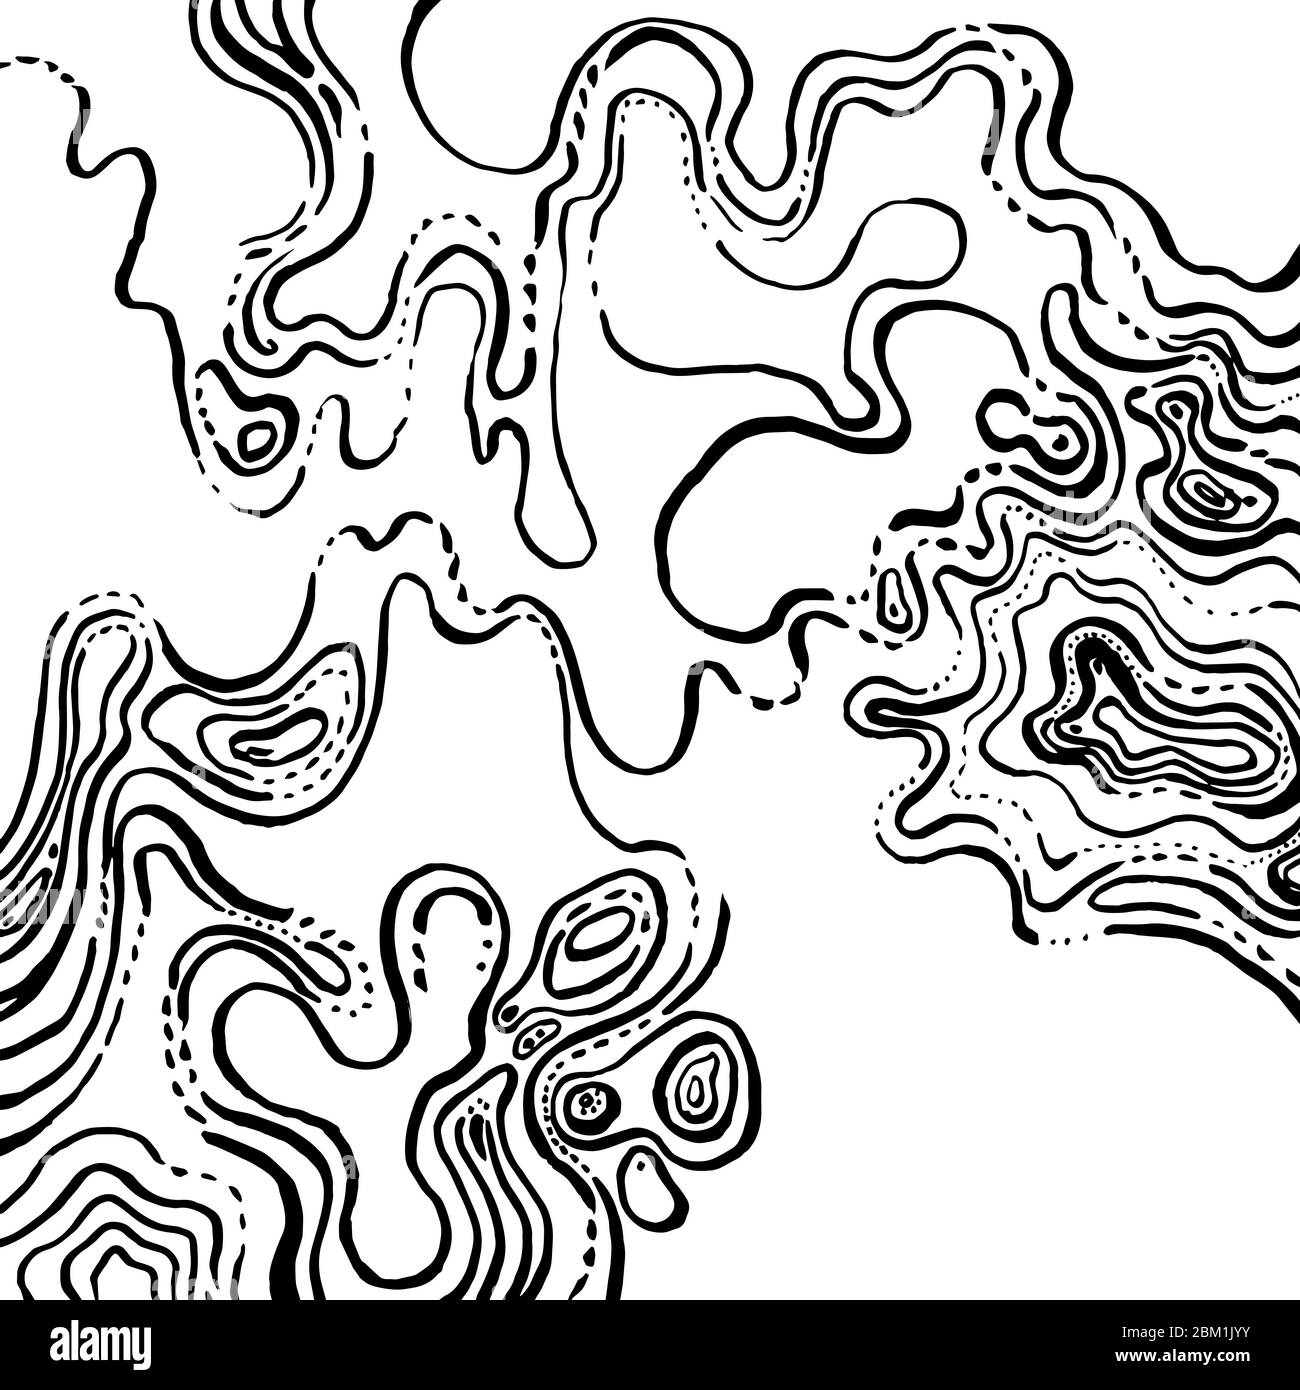 Fondo abstracto en blanco y negro. Muchas líneas curvas caóticas crean un patrón en la superficie, caótico y abstracto, gráficos dibujados a mano. Ilustración del Vector